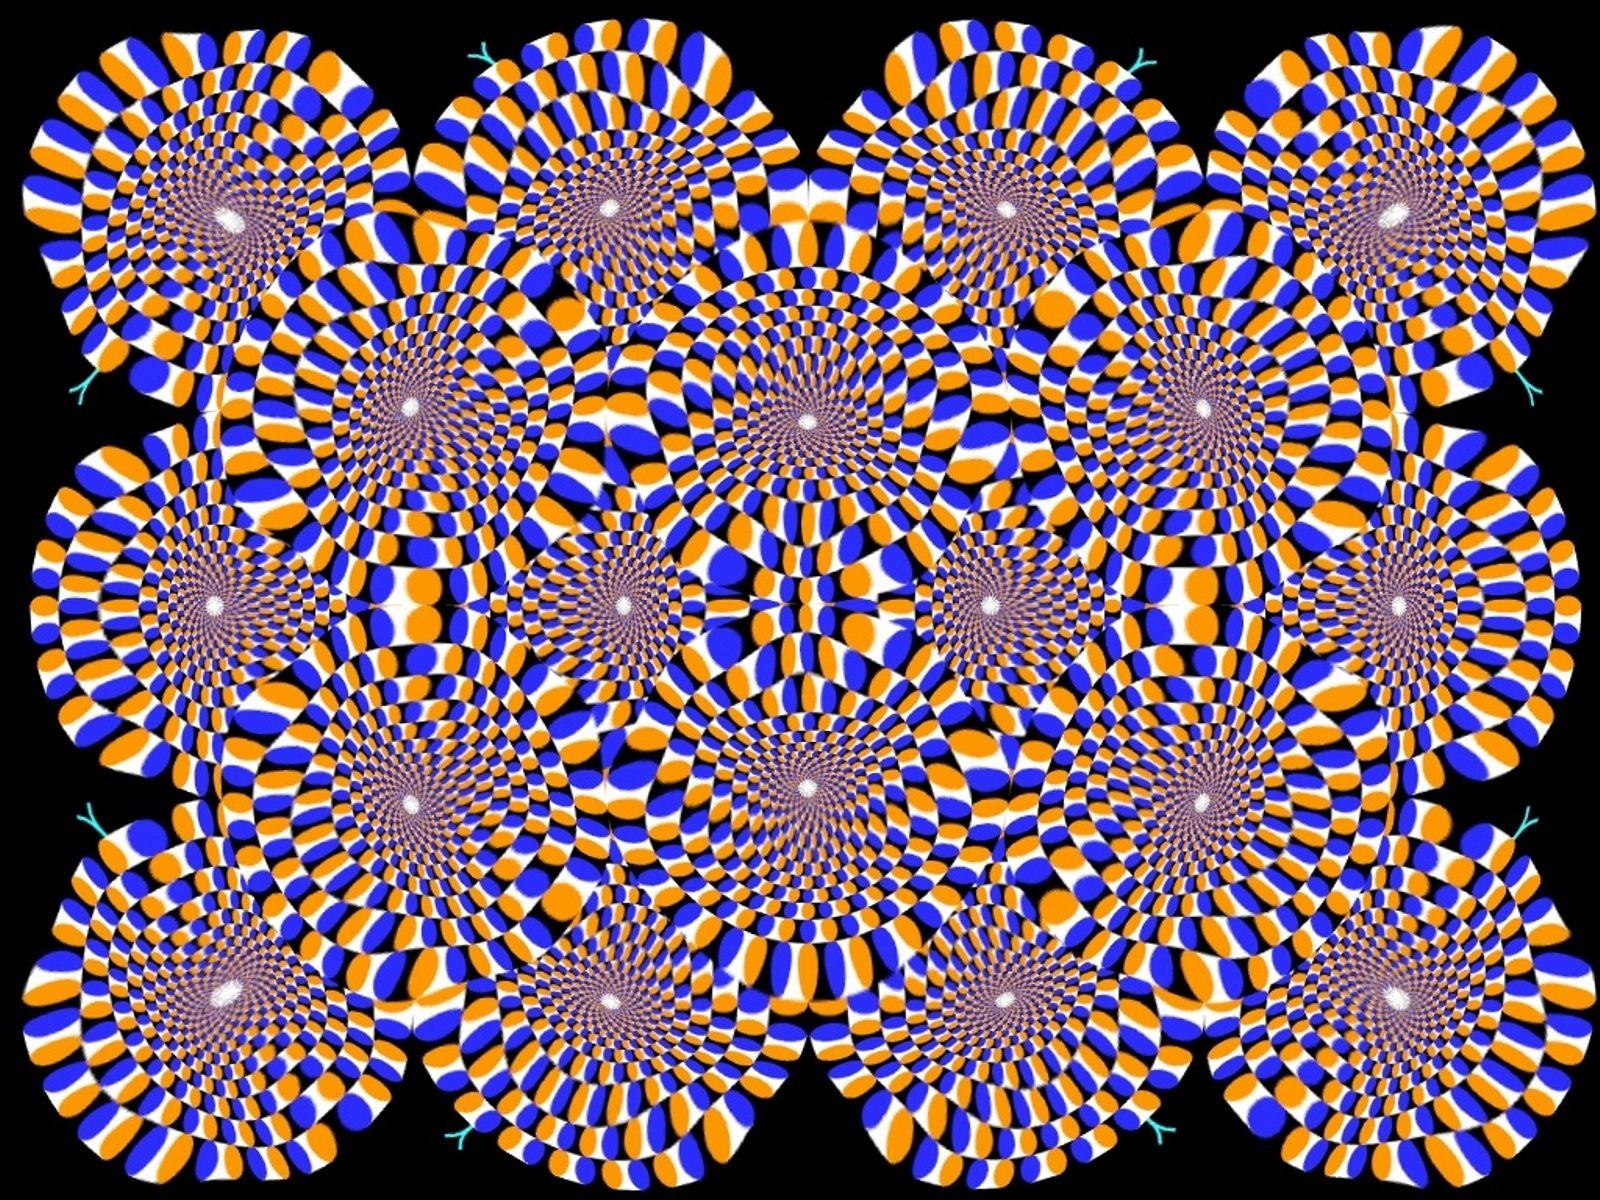 Популярные заставки и фоны Оптическая Иллюзия на компьютер